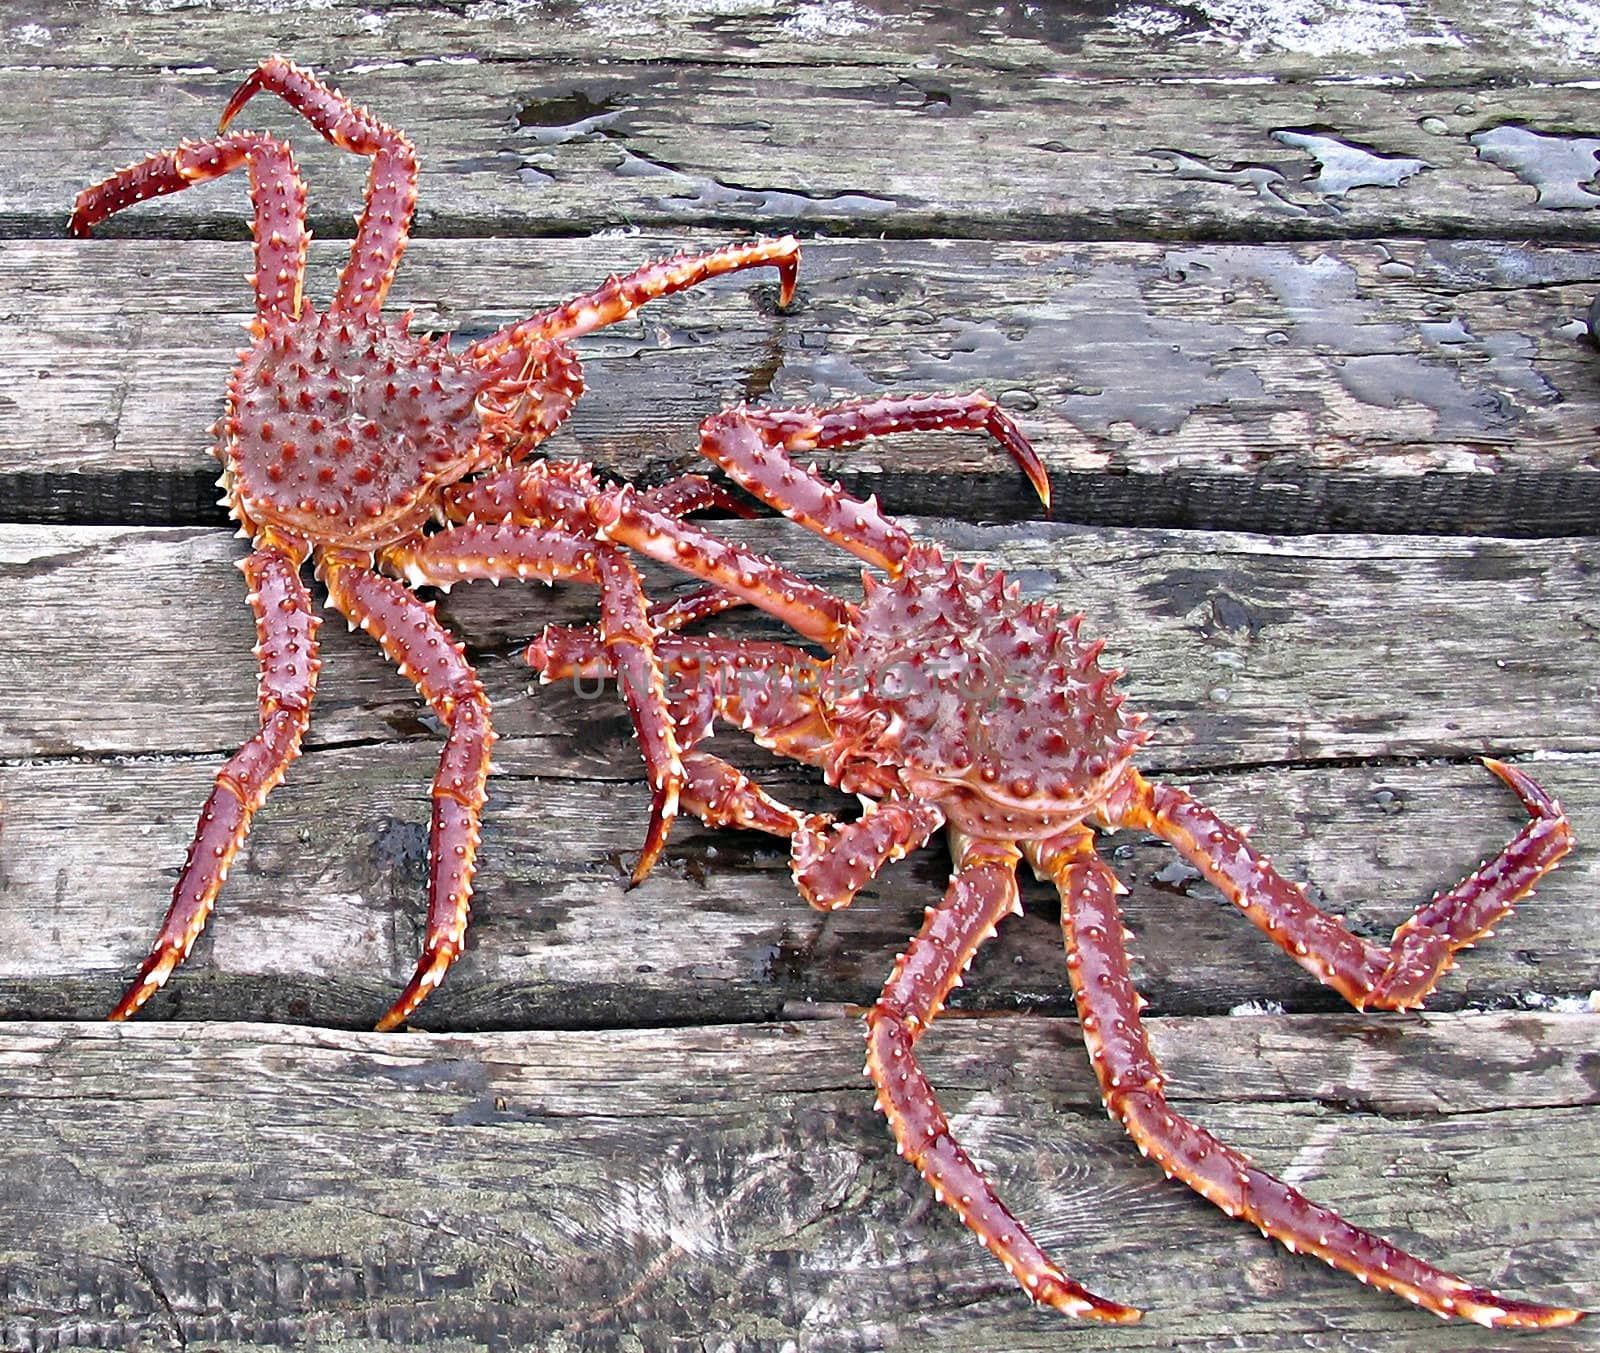 Two kamchatka crabs